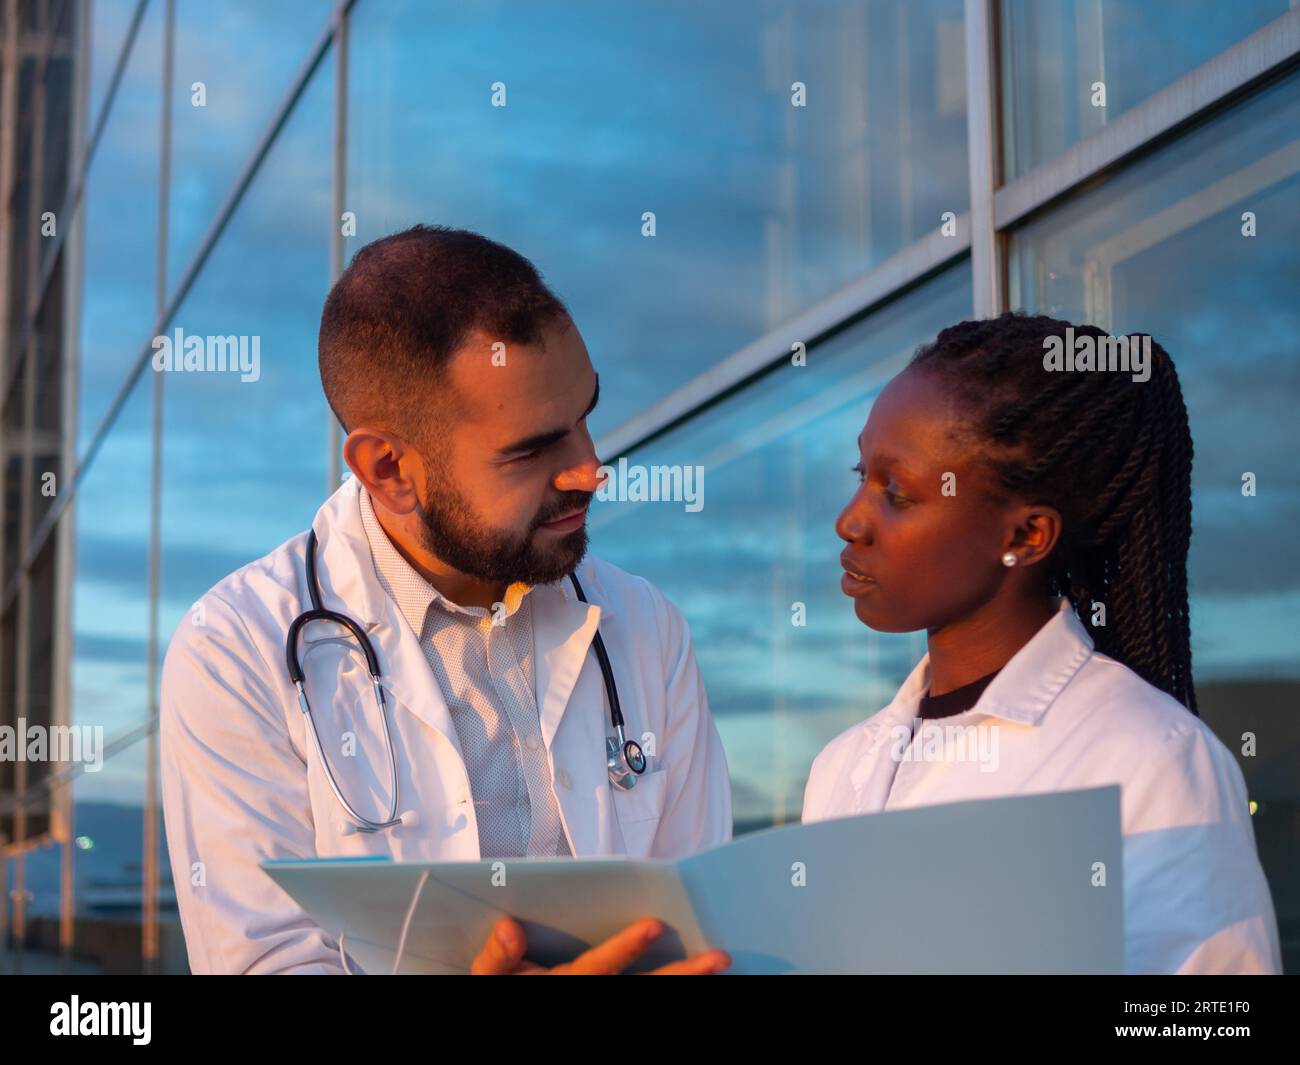 Due medici ospedalieri, una donna e un uomo, che fanno una pausa all'aperto. Guardatevi mentre sorridete. Foto Stock